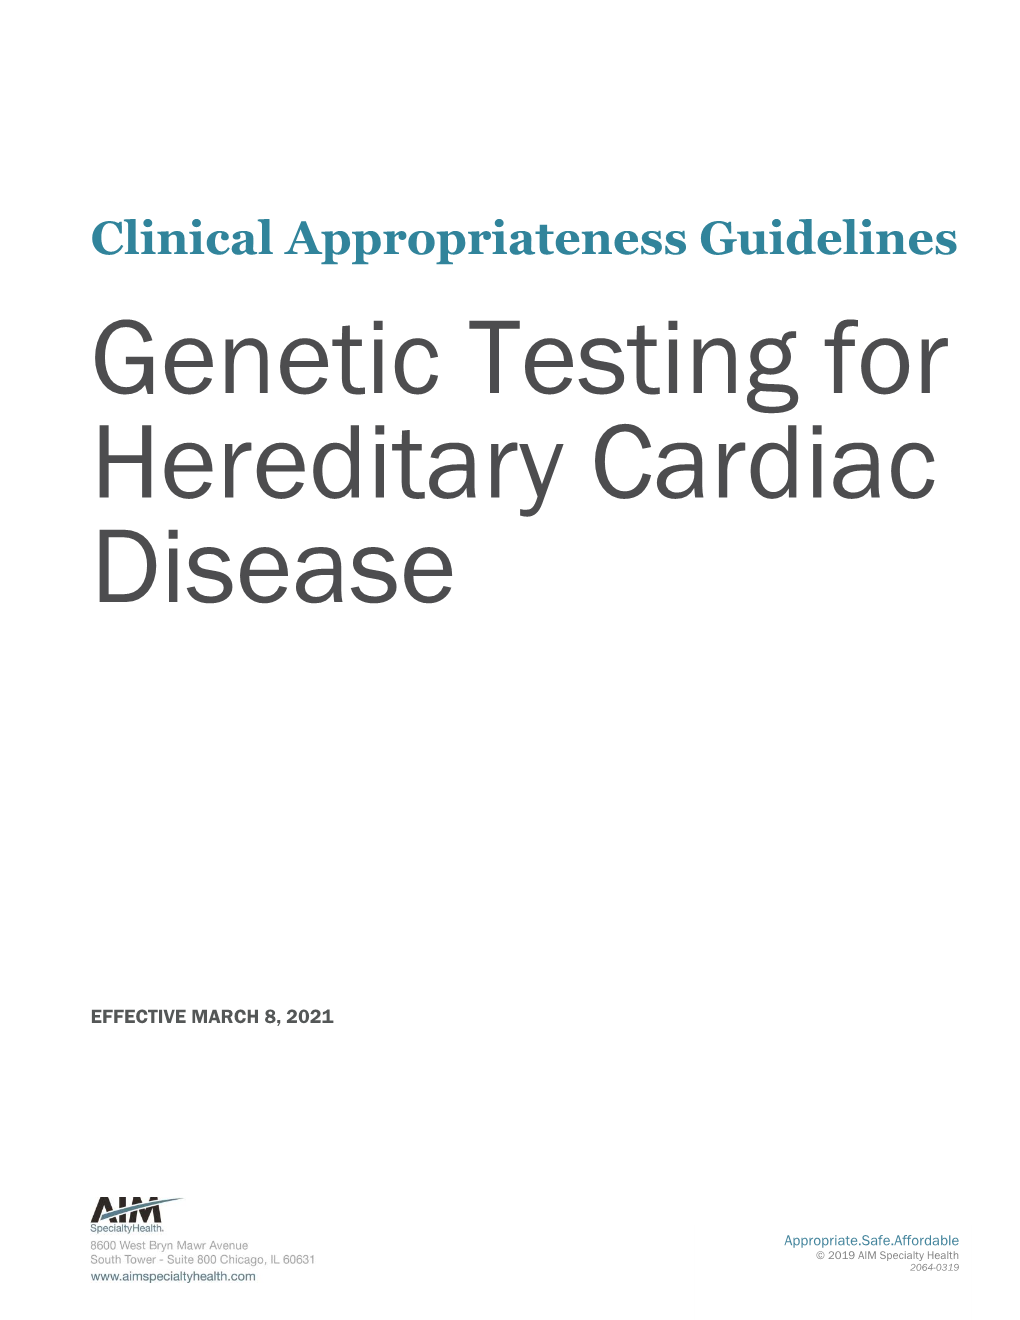 Genetic Testing for Hereditary Cardiac Disease